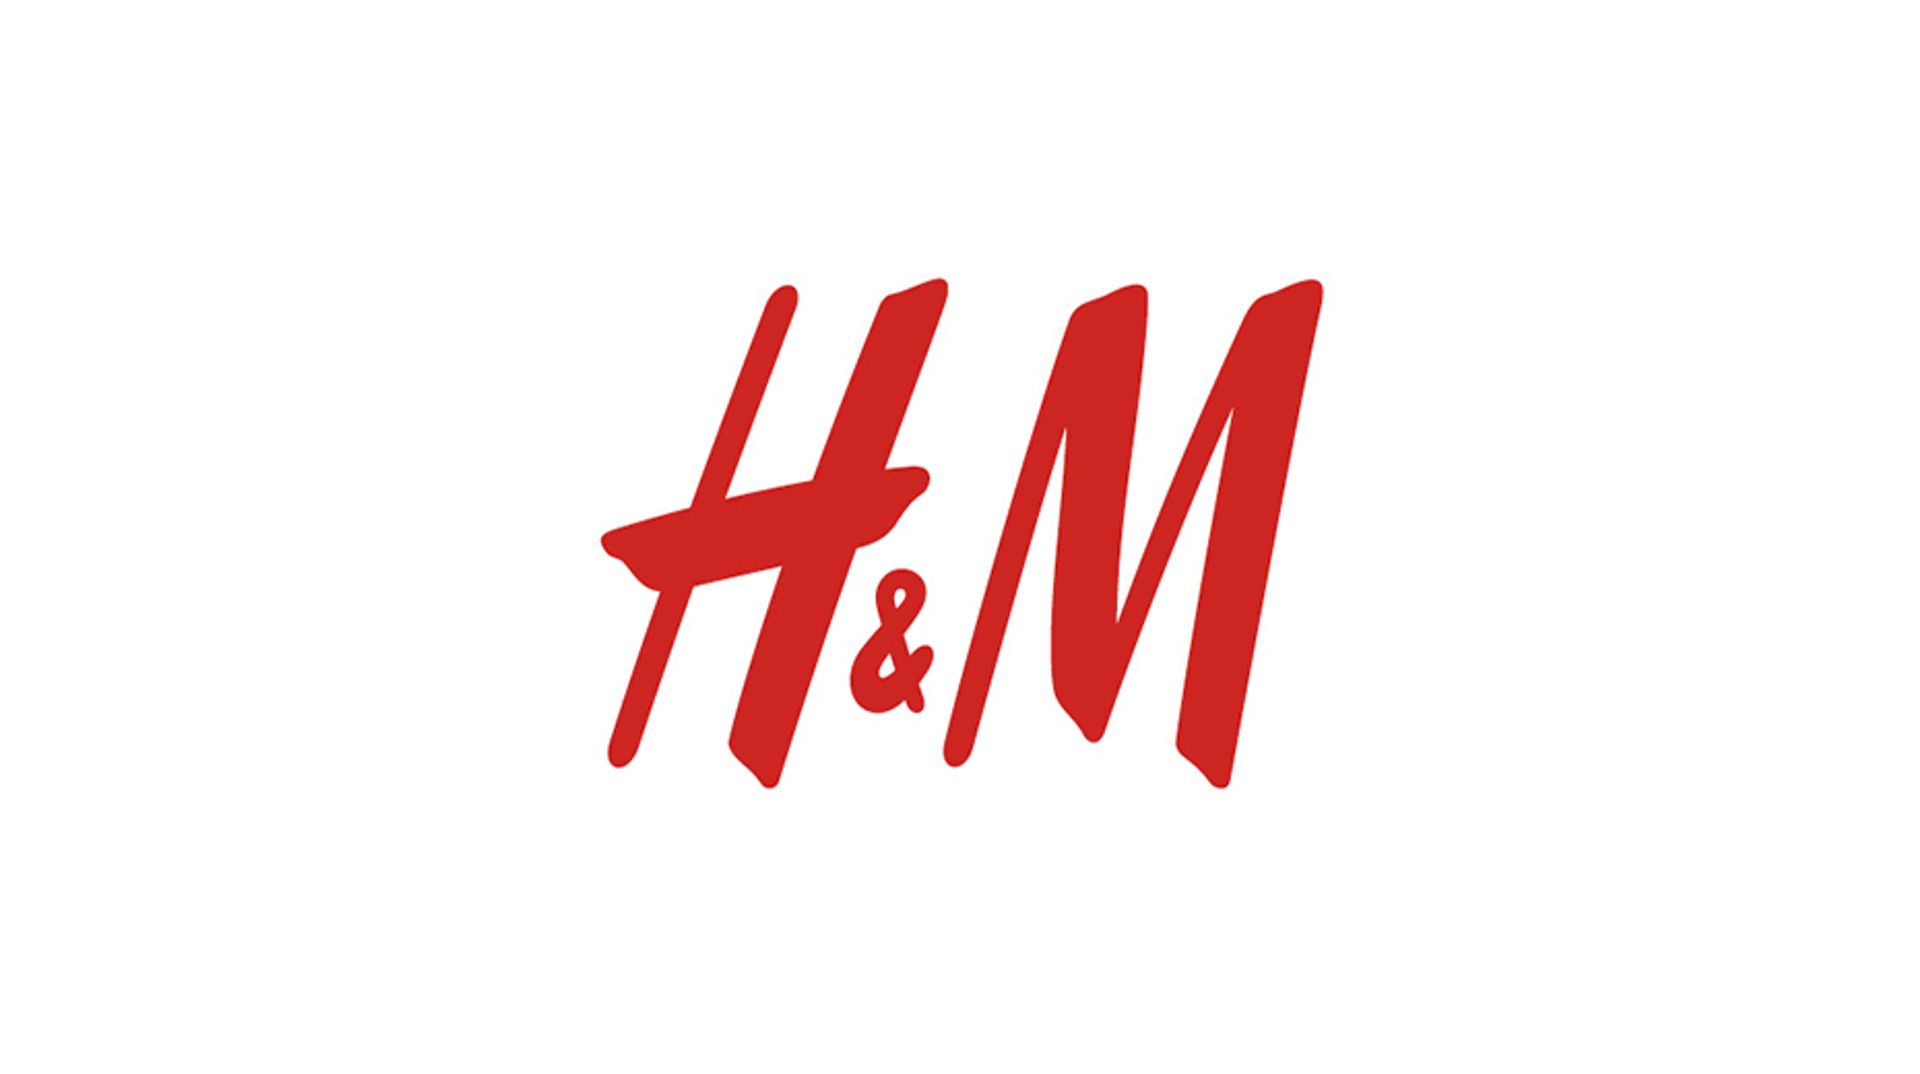 h&m klantenservice chat